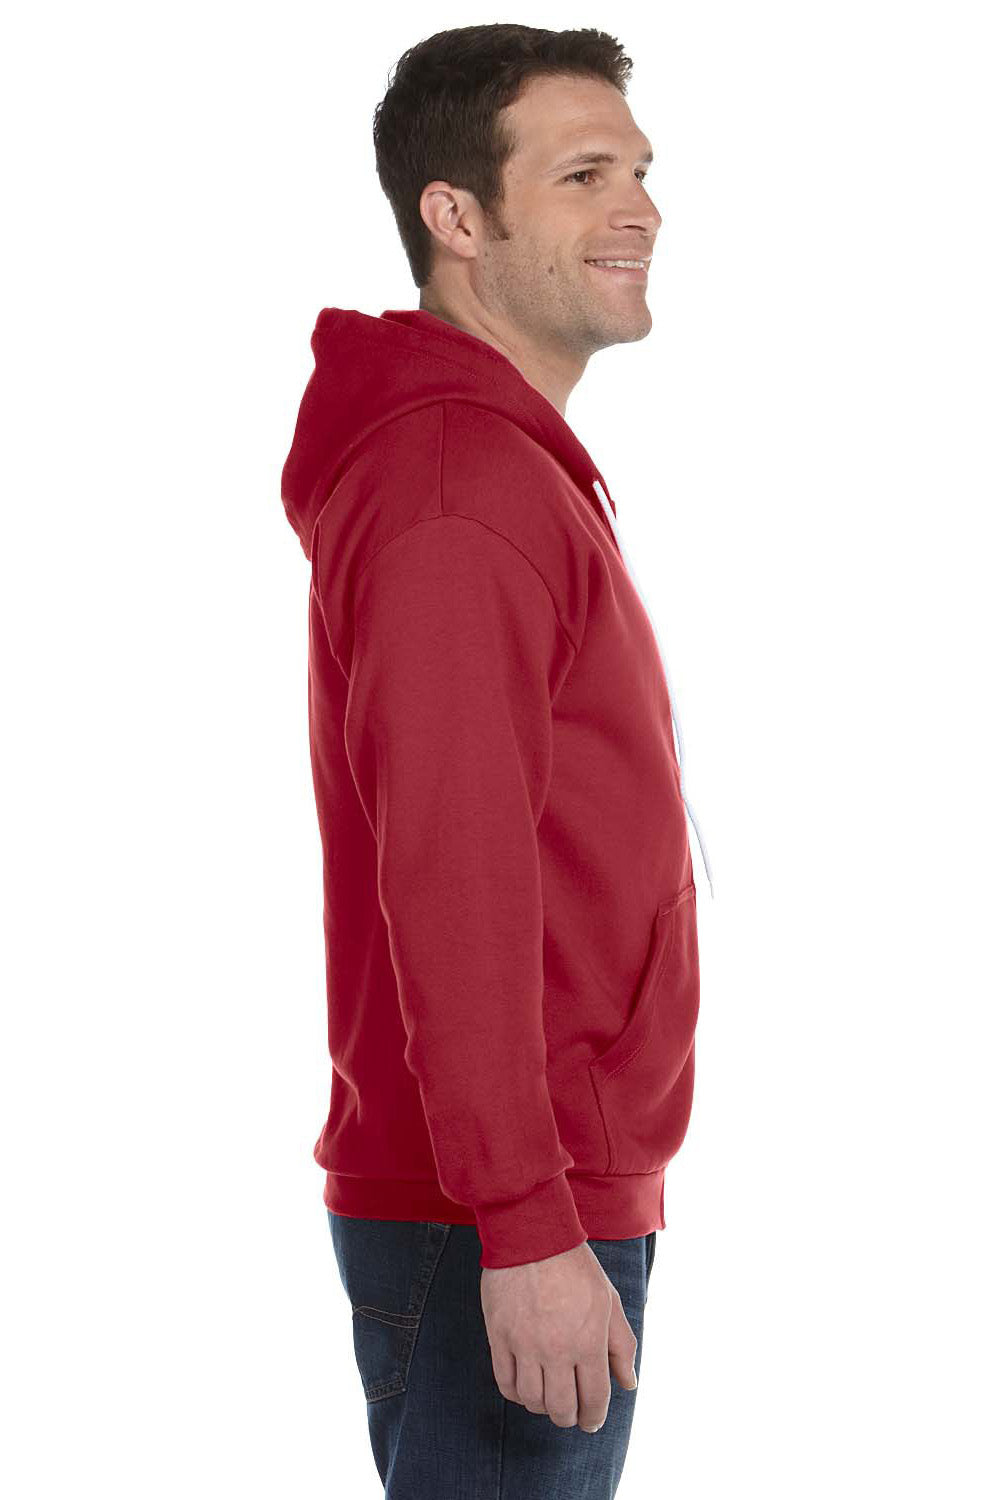 Anvil 71600 Mens Fleece Full Zip Hooded Sweatshirt Hoodie Independence Red Side